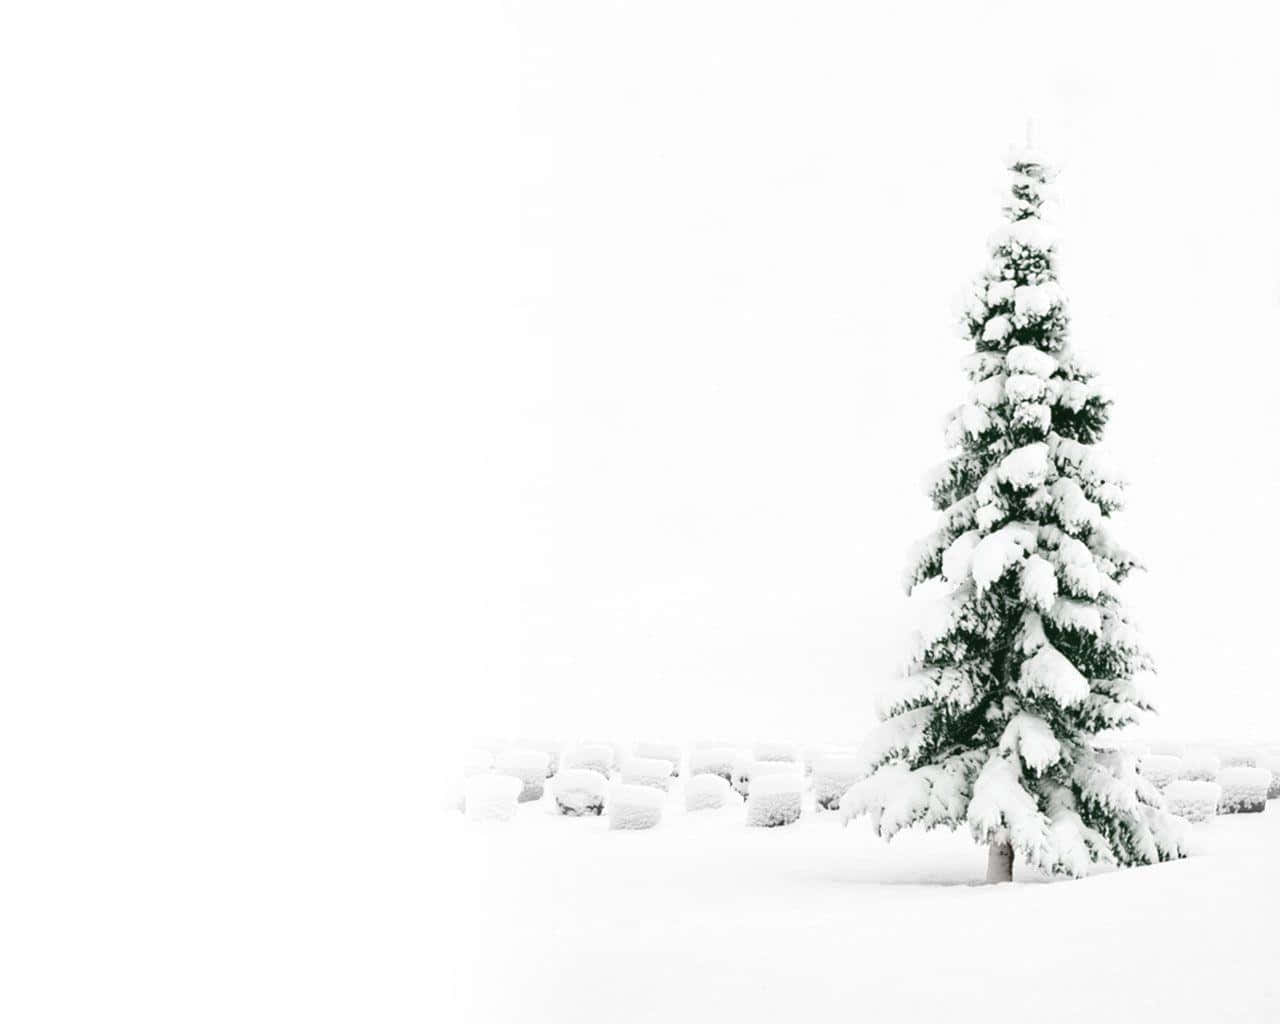 Ettræ Dækket Af Sne I Sneen.